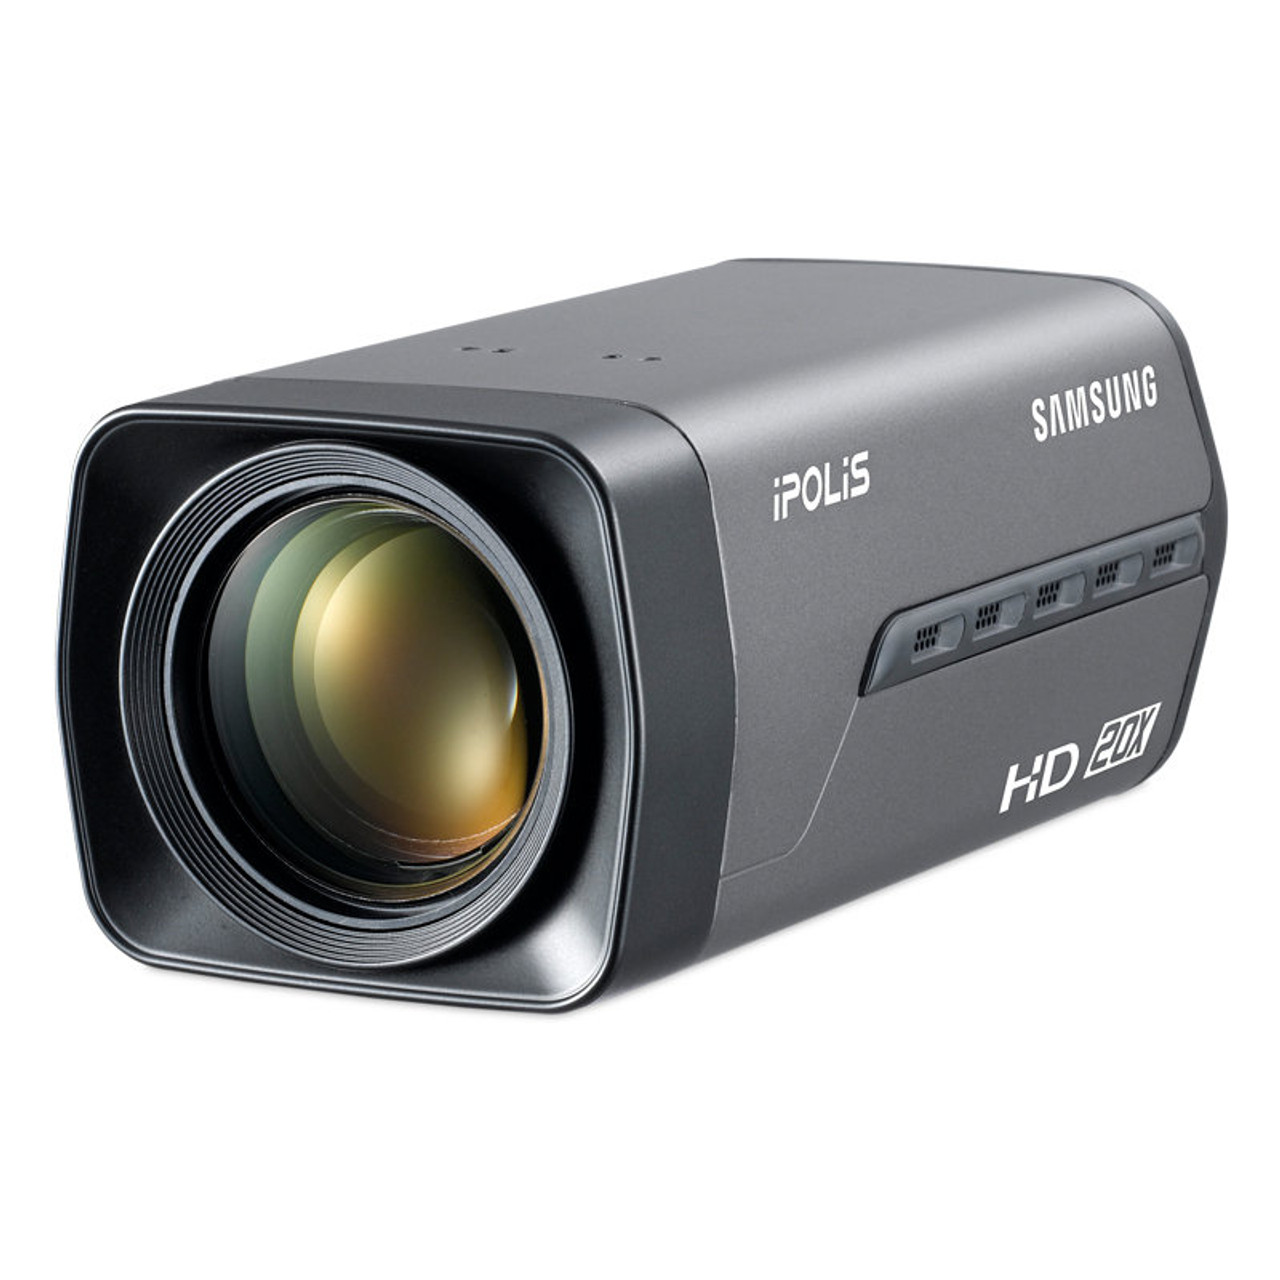 Samsung SNZ-5200P IP zum kamera Rasprodaja - 1.3 MP 20x Zoom mrežna kamera u box kućištu